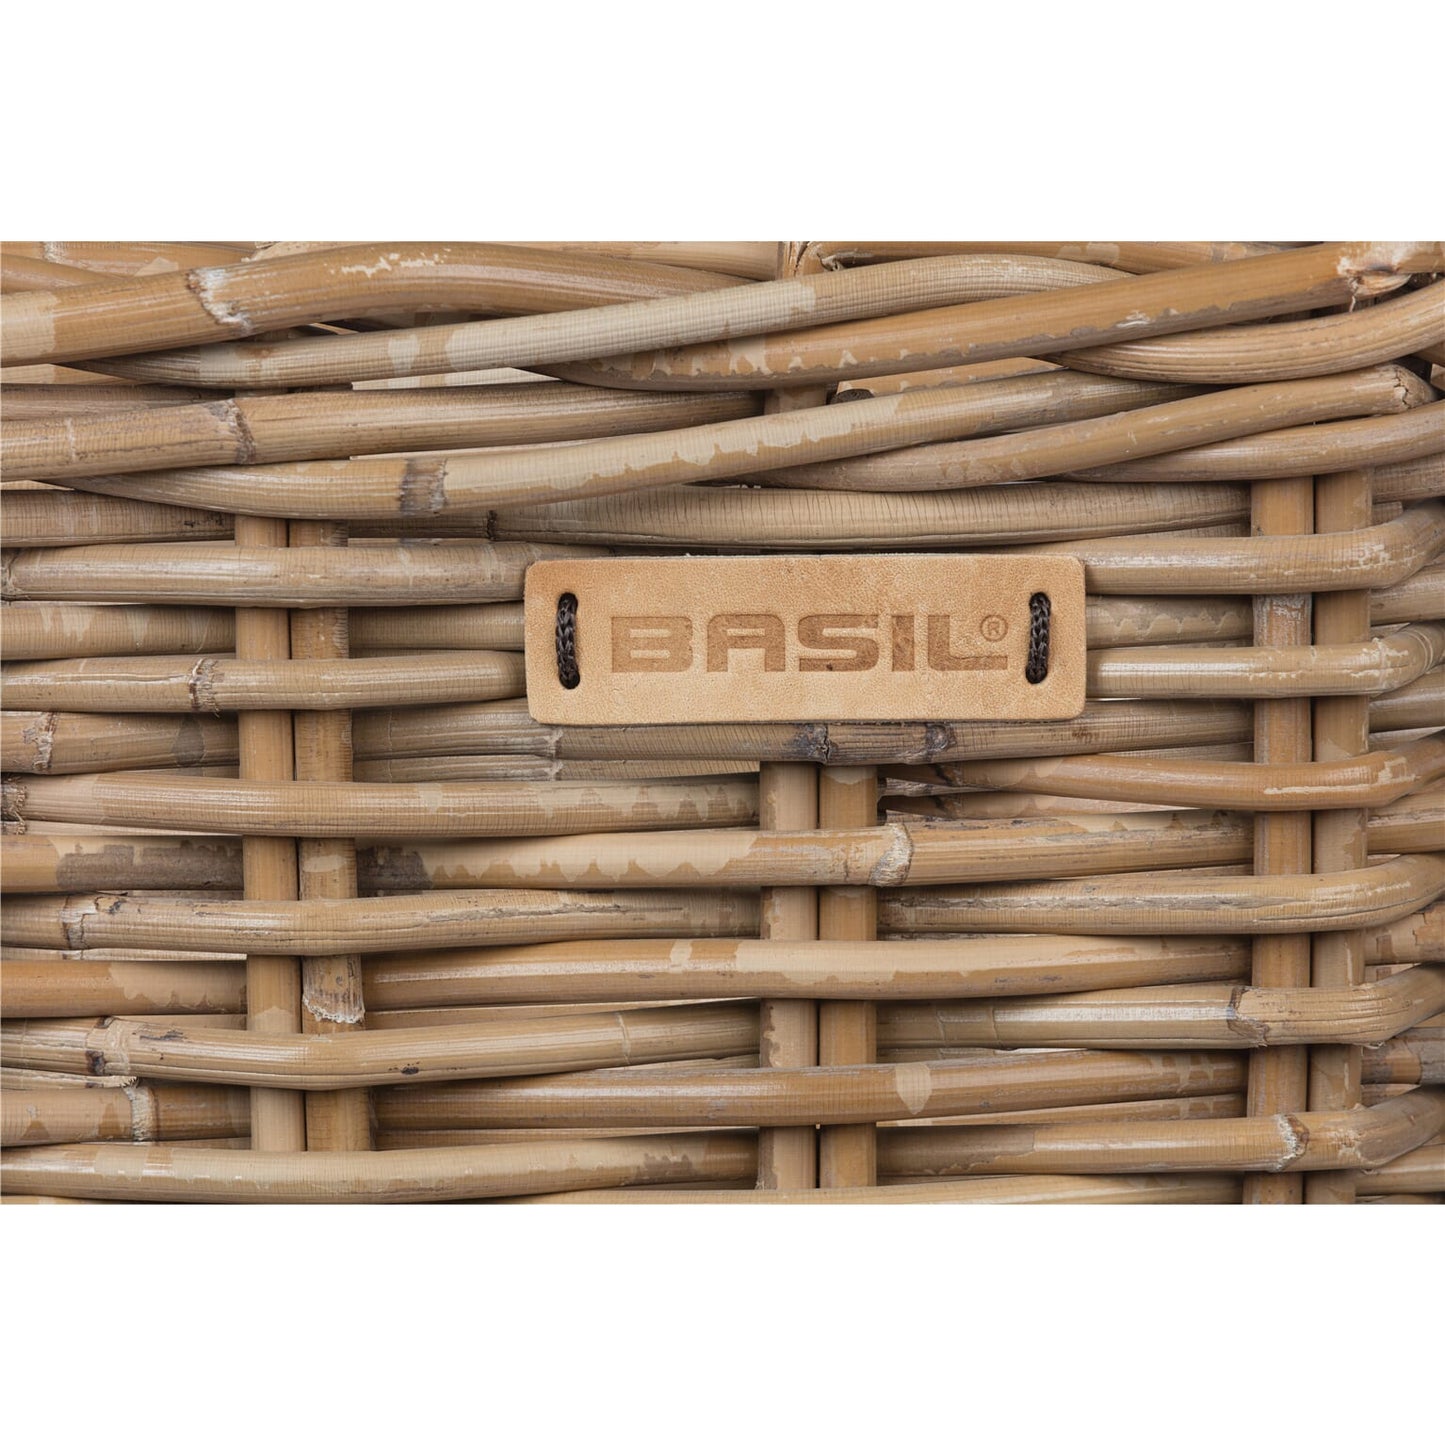 Basil Dorset - cestino per biciclette - medio - grigio